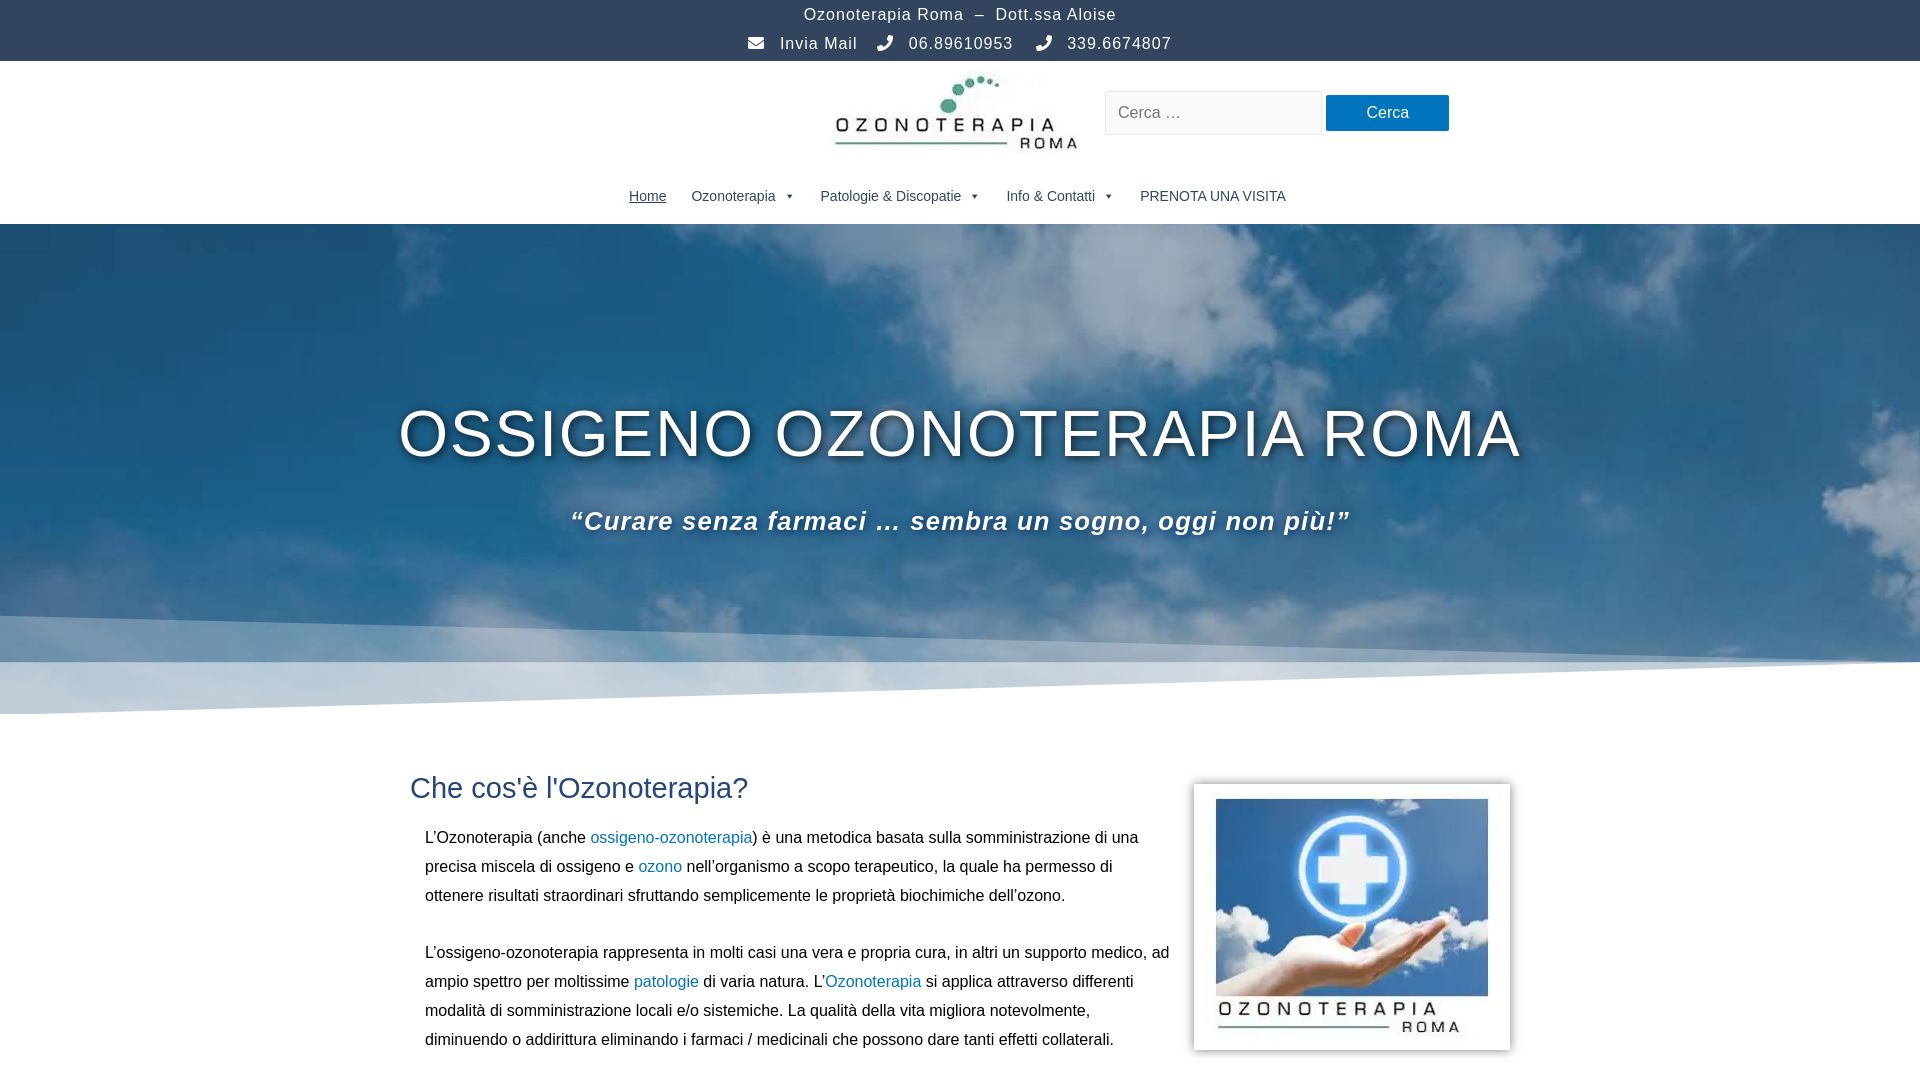 вебсайт ozonoterapiaroma.it Є   ONLINE